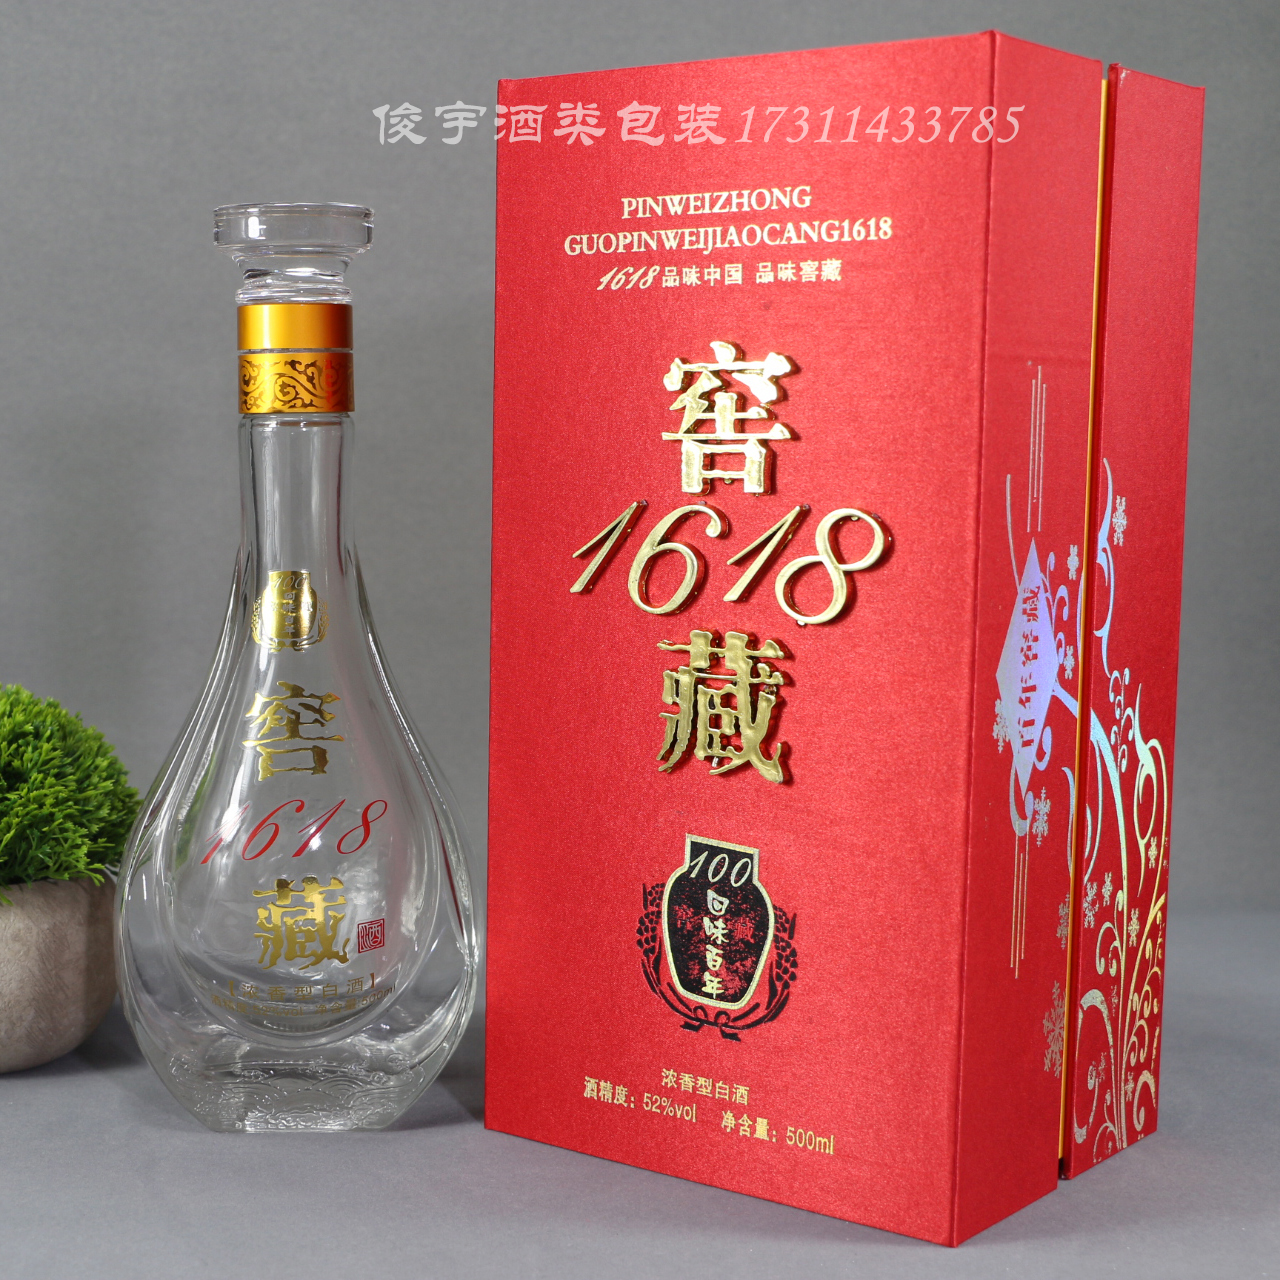 喜酒空瓶结婚酒瓶陶瓷酒瓶红色婚庆酒瓶窖藏1618定制包装礼盒包邮